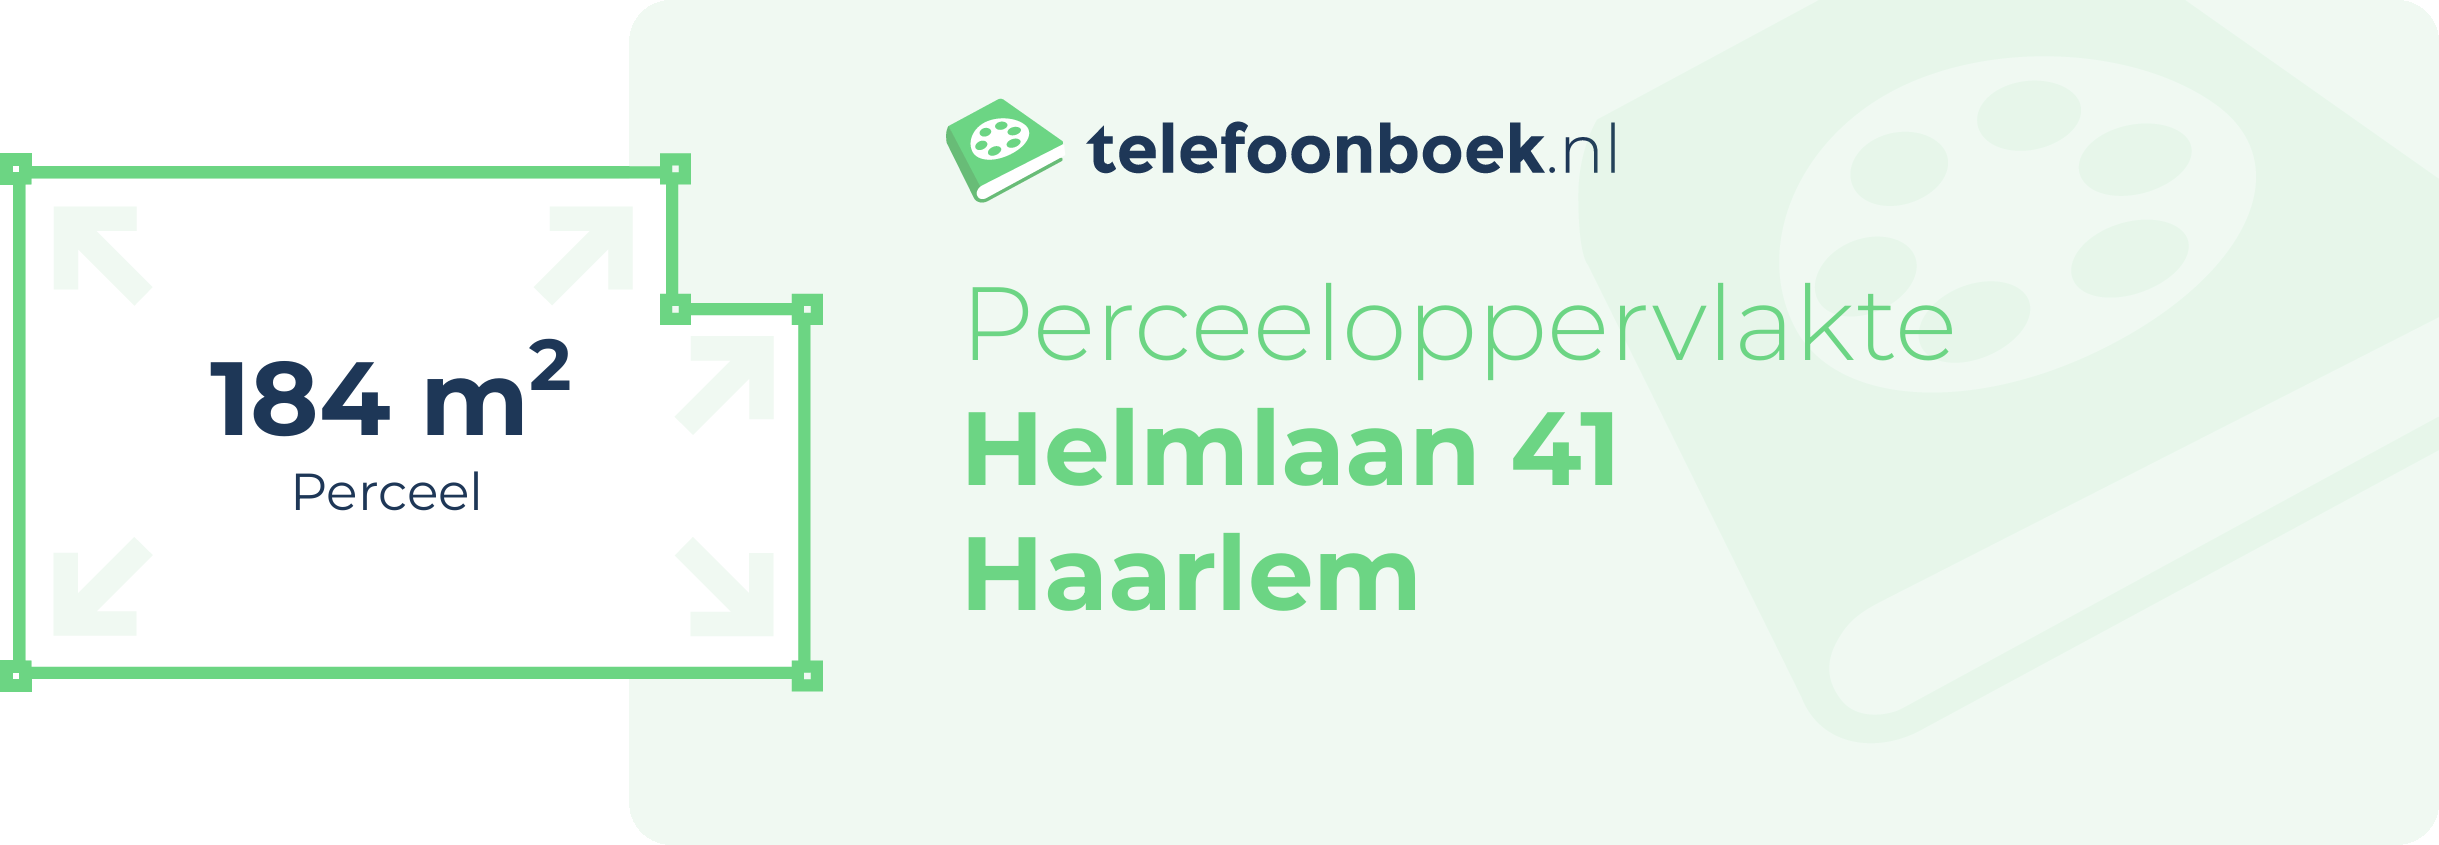 Perceeloppervlakte Helmlaan 41 Haarlem